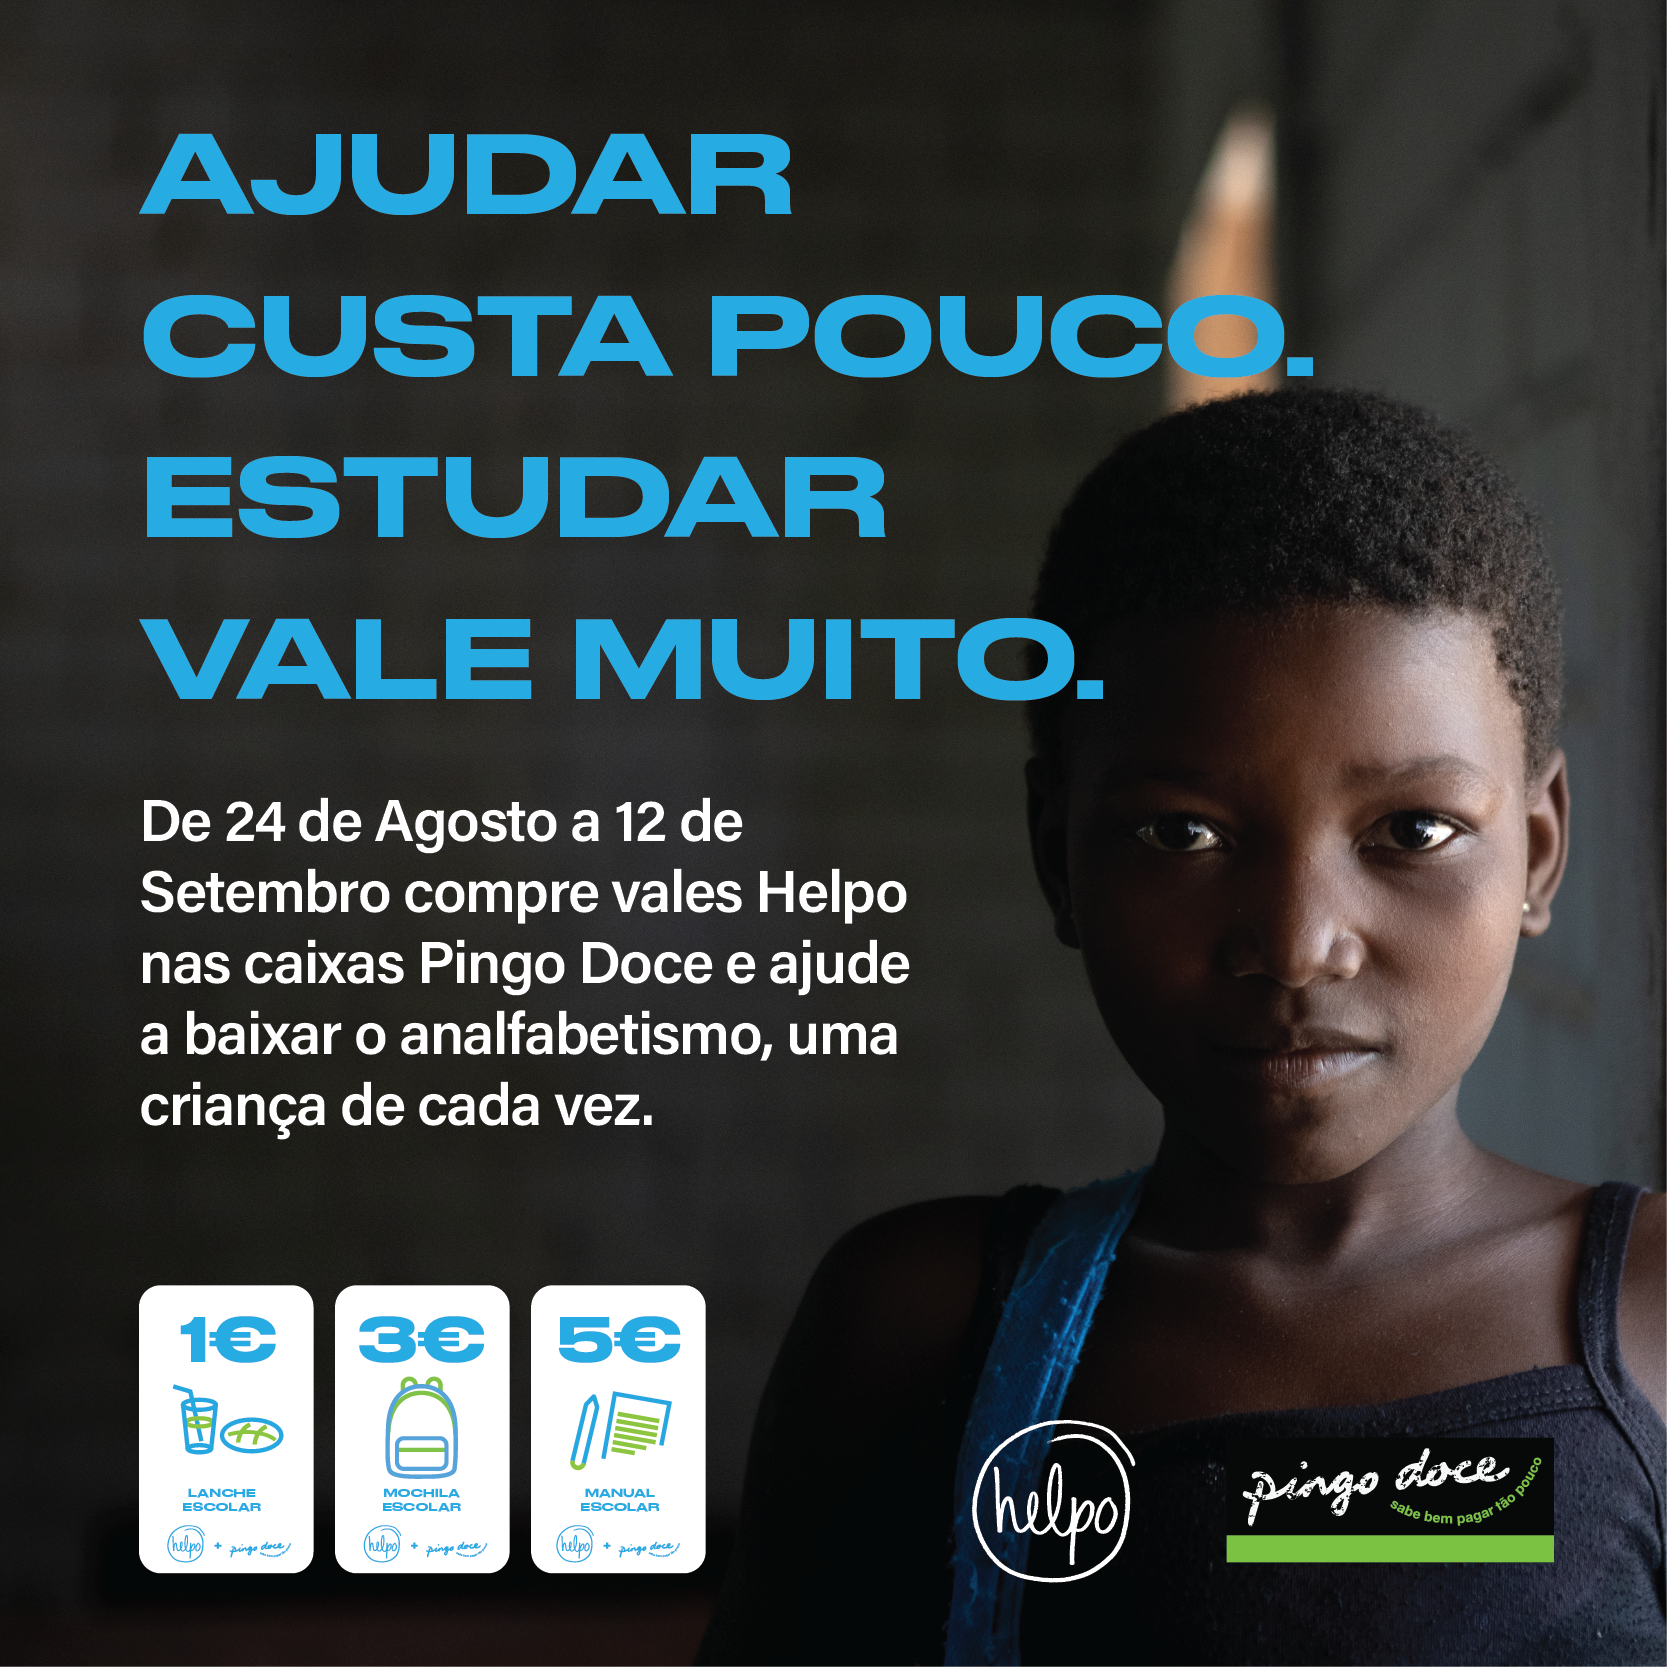 Campanha nas lojas Pingo Doce apoia a Educação de milhares de crianças em Moçambique